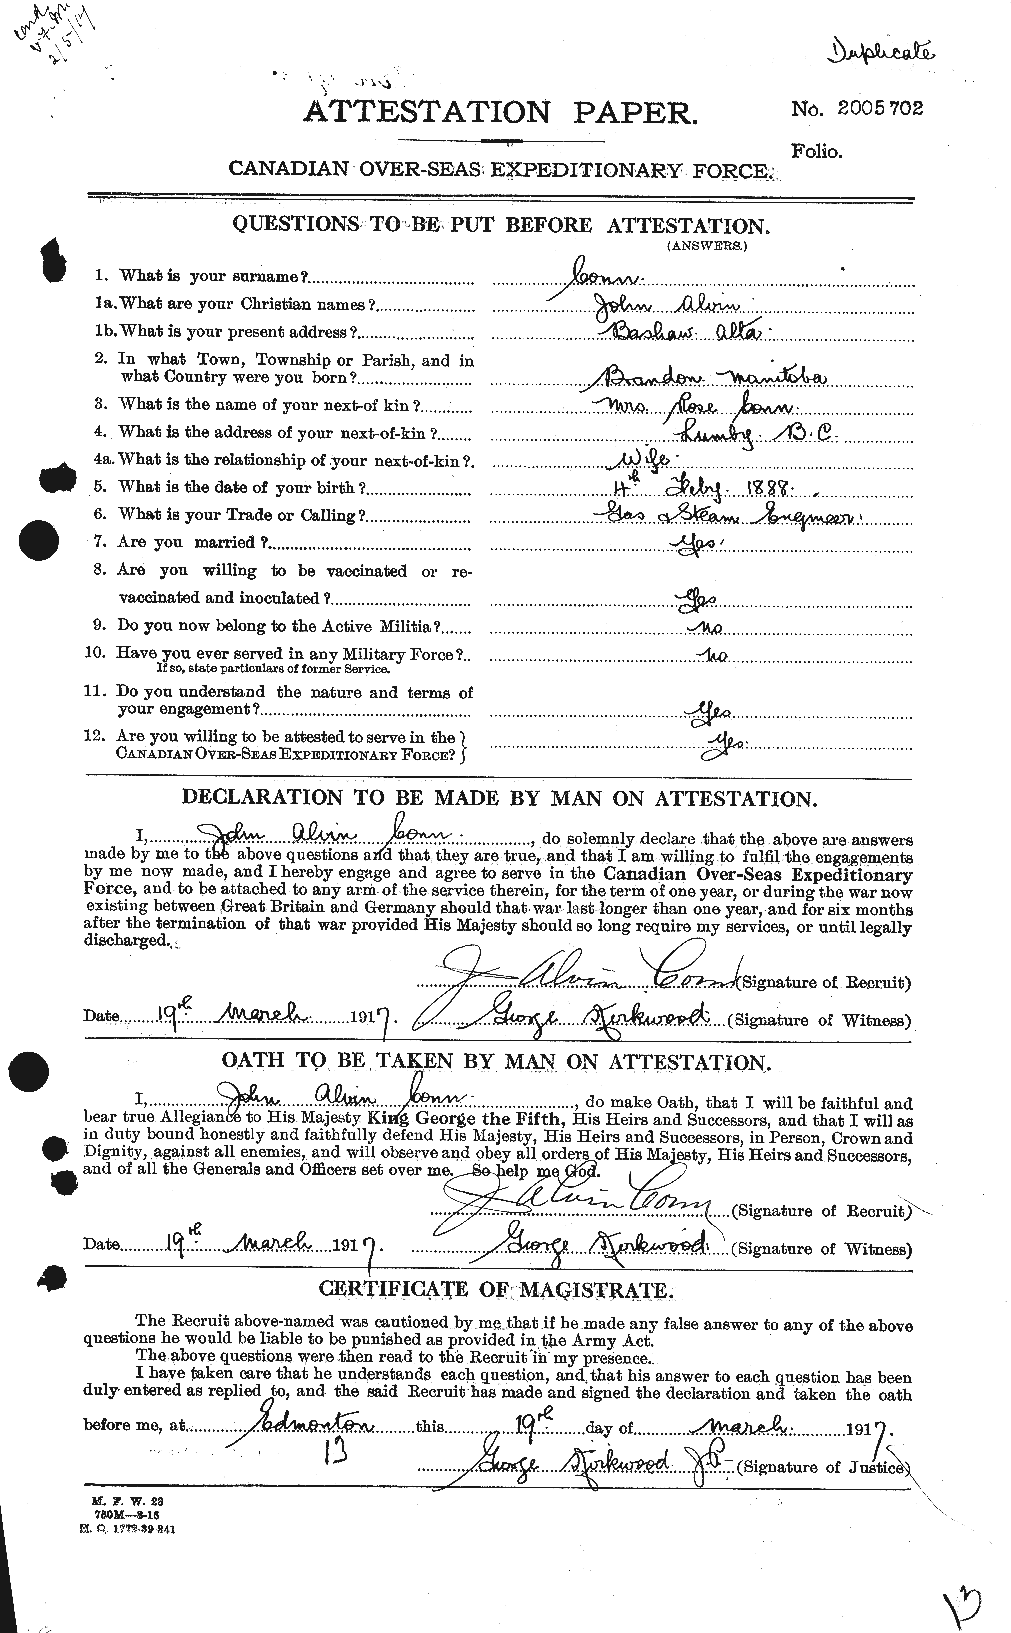 Dossiers du Personnel de la Première Guerre mondiale - CEC 067598a